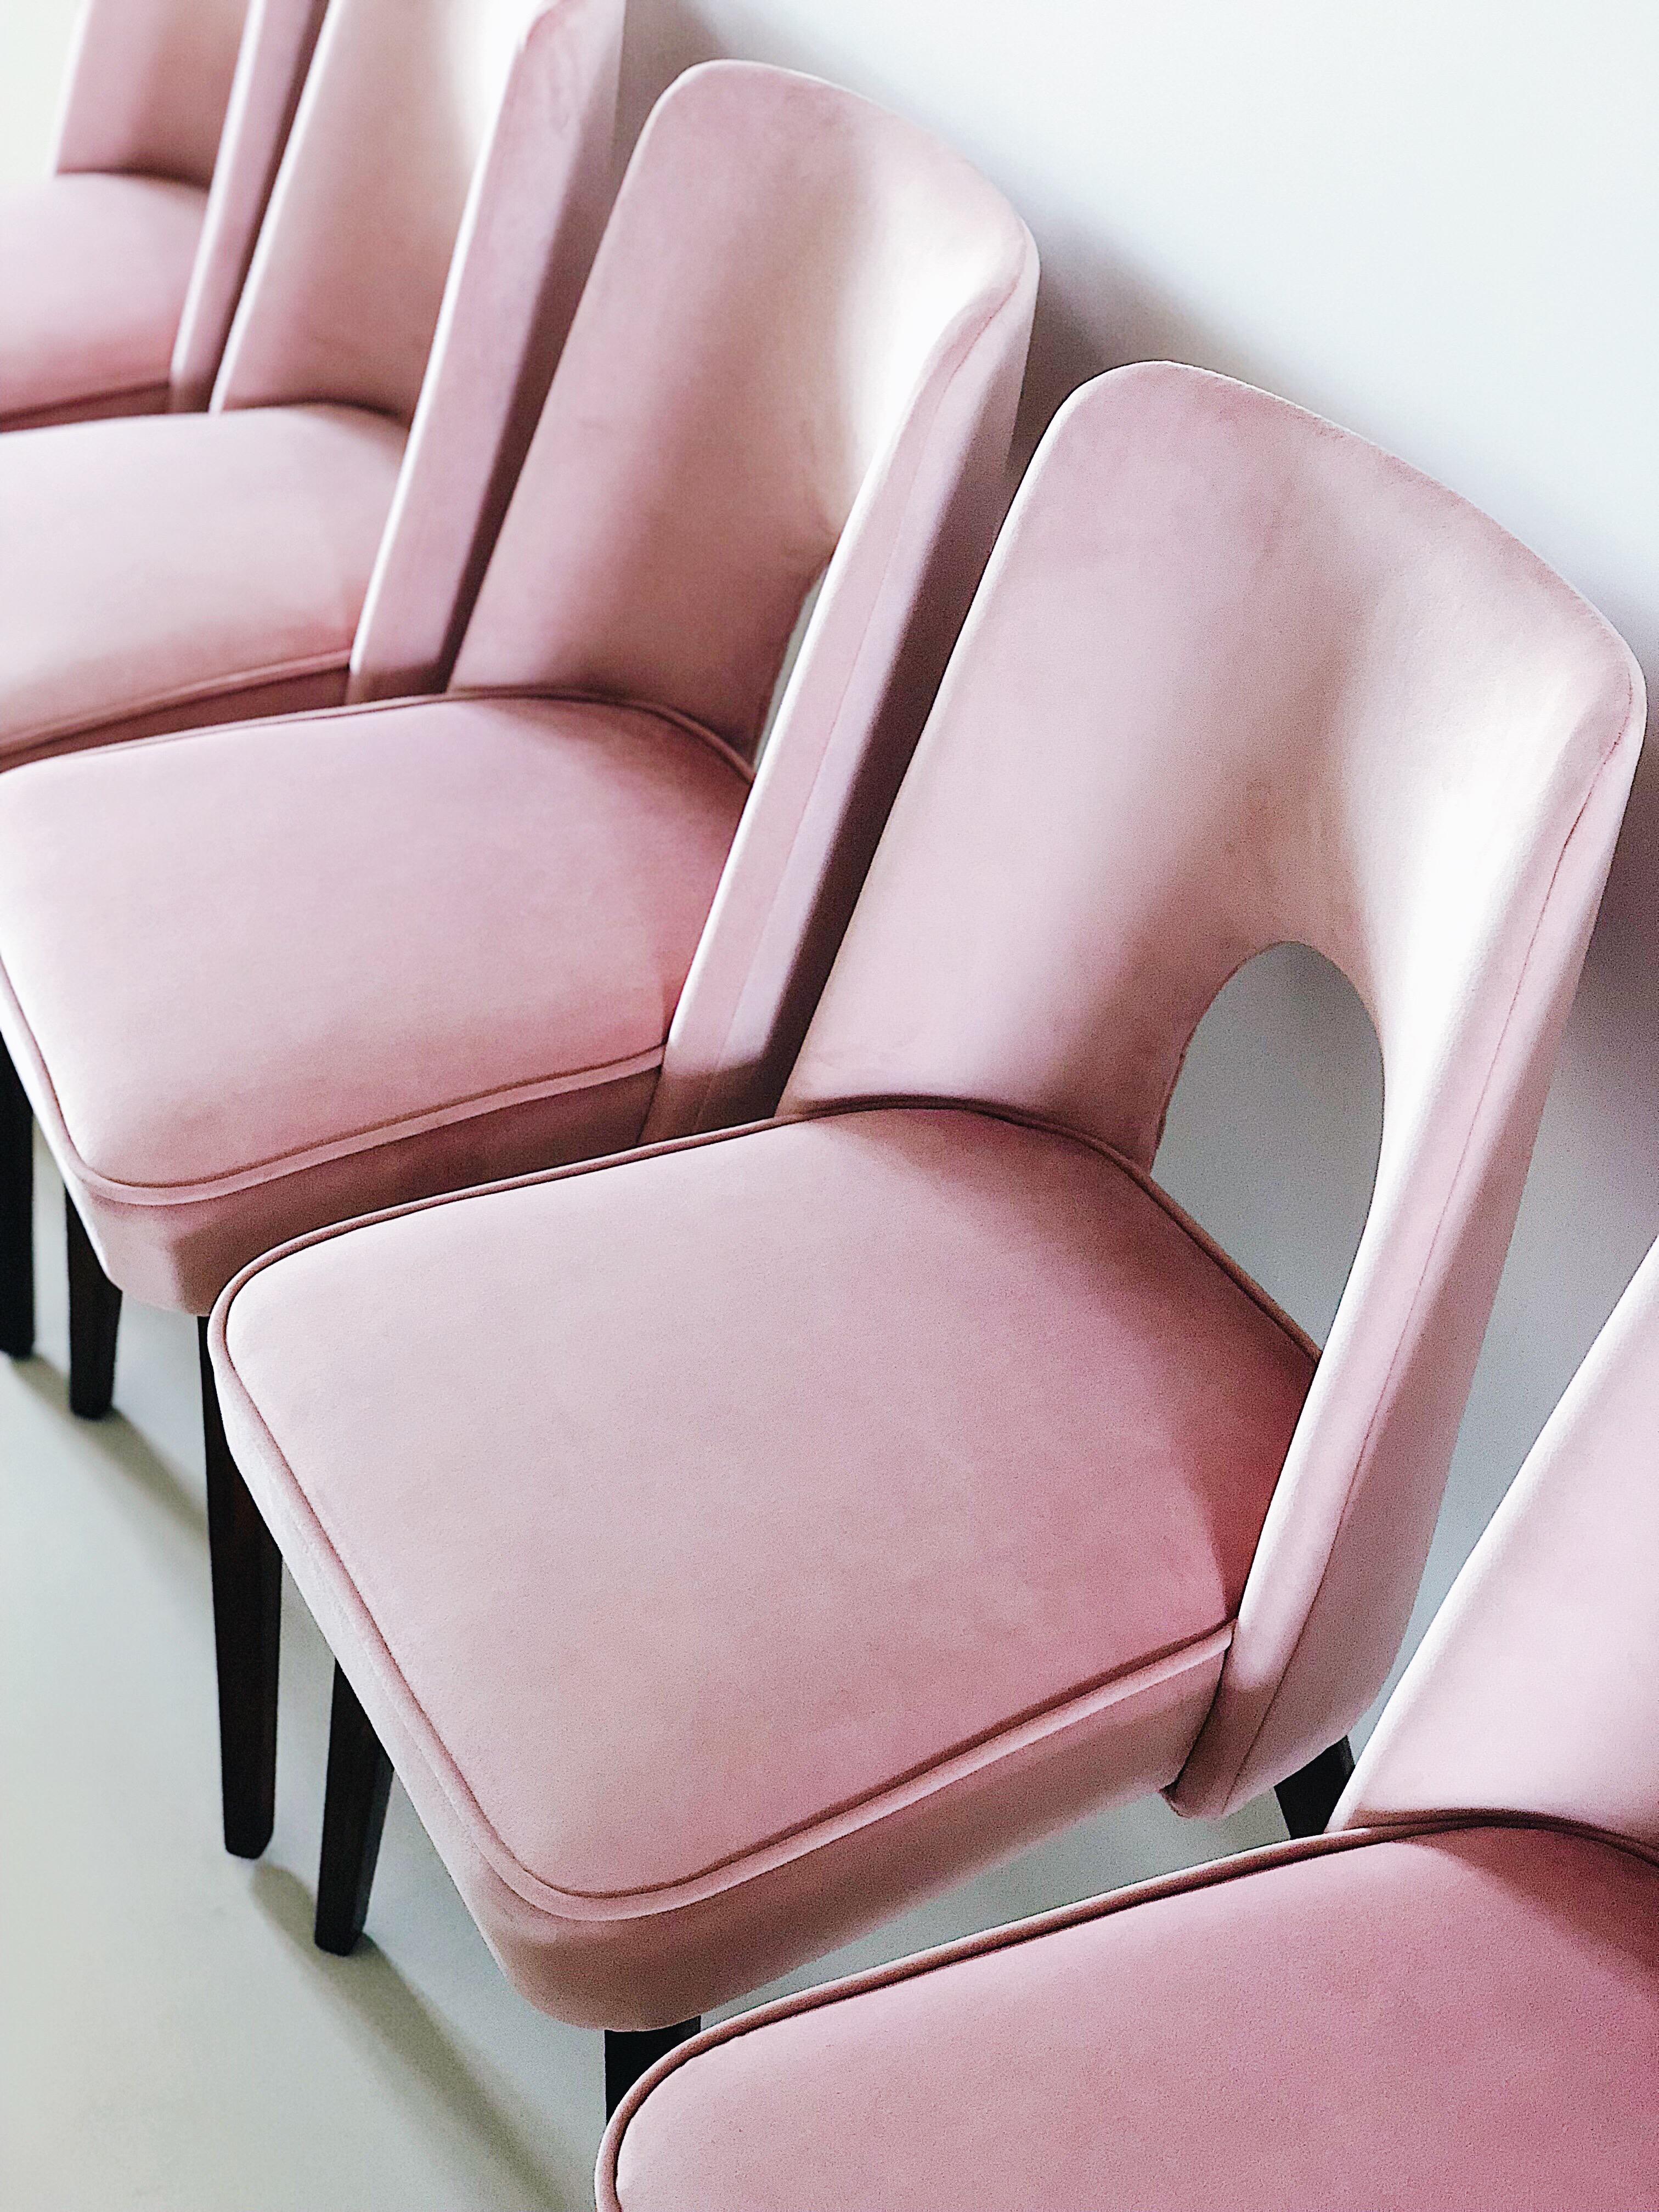 Polonais Ensemble de deux chaises rose pâle « Shell », années 1960 en vente